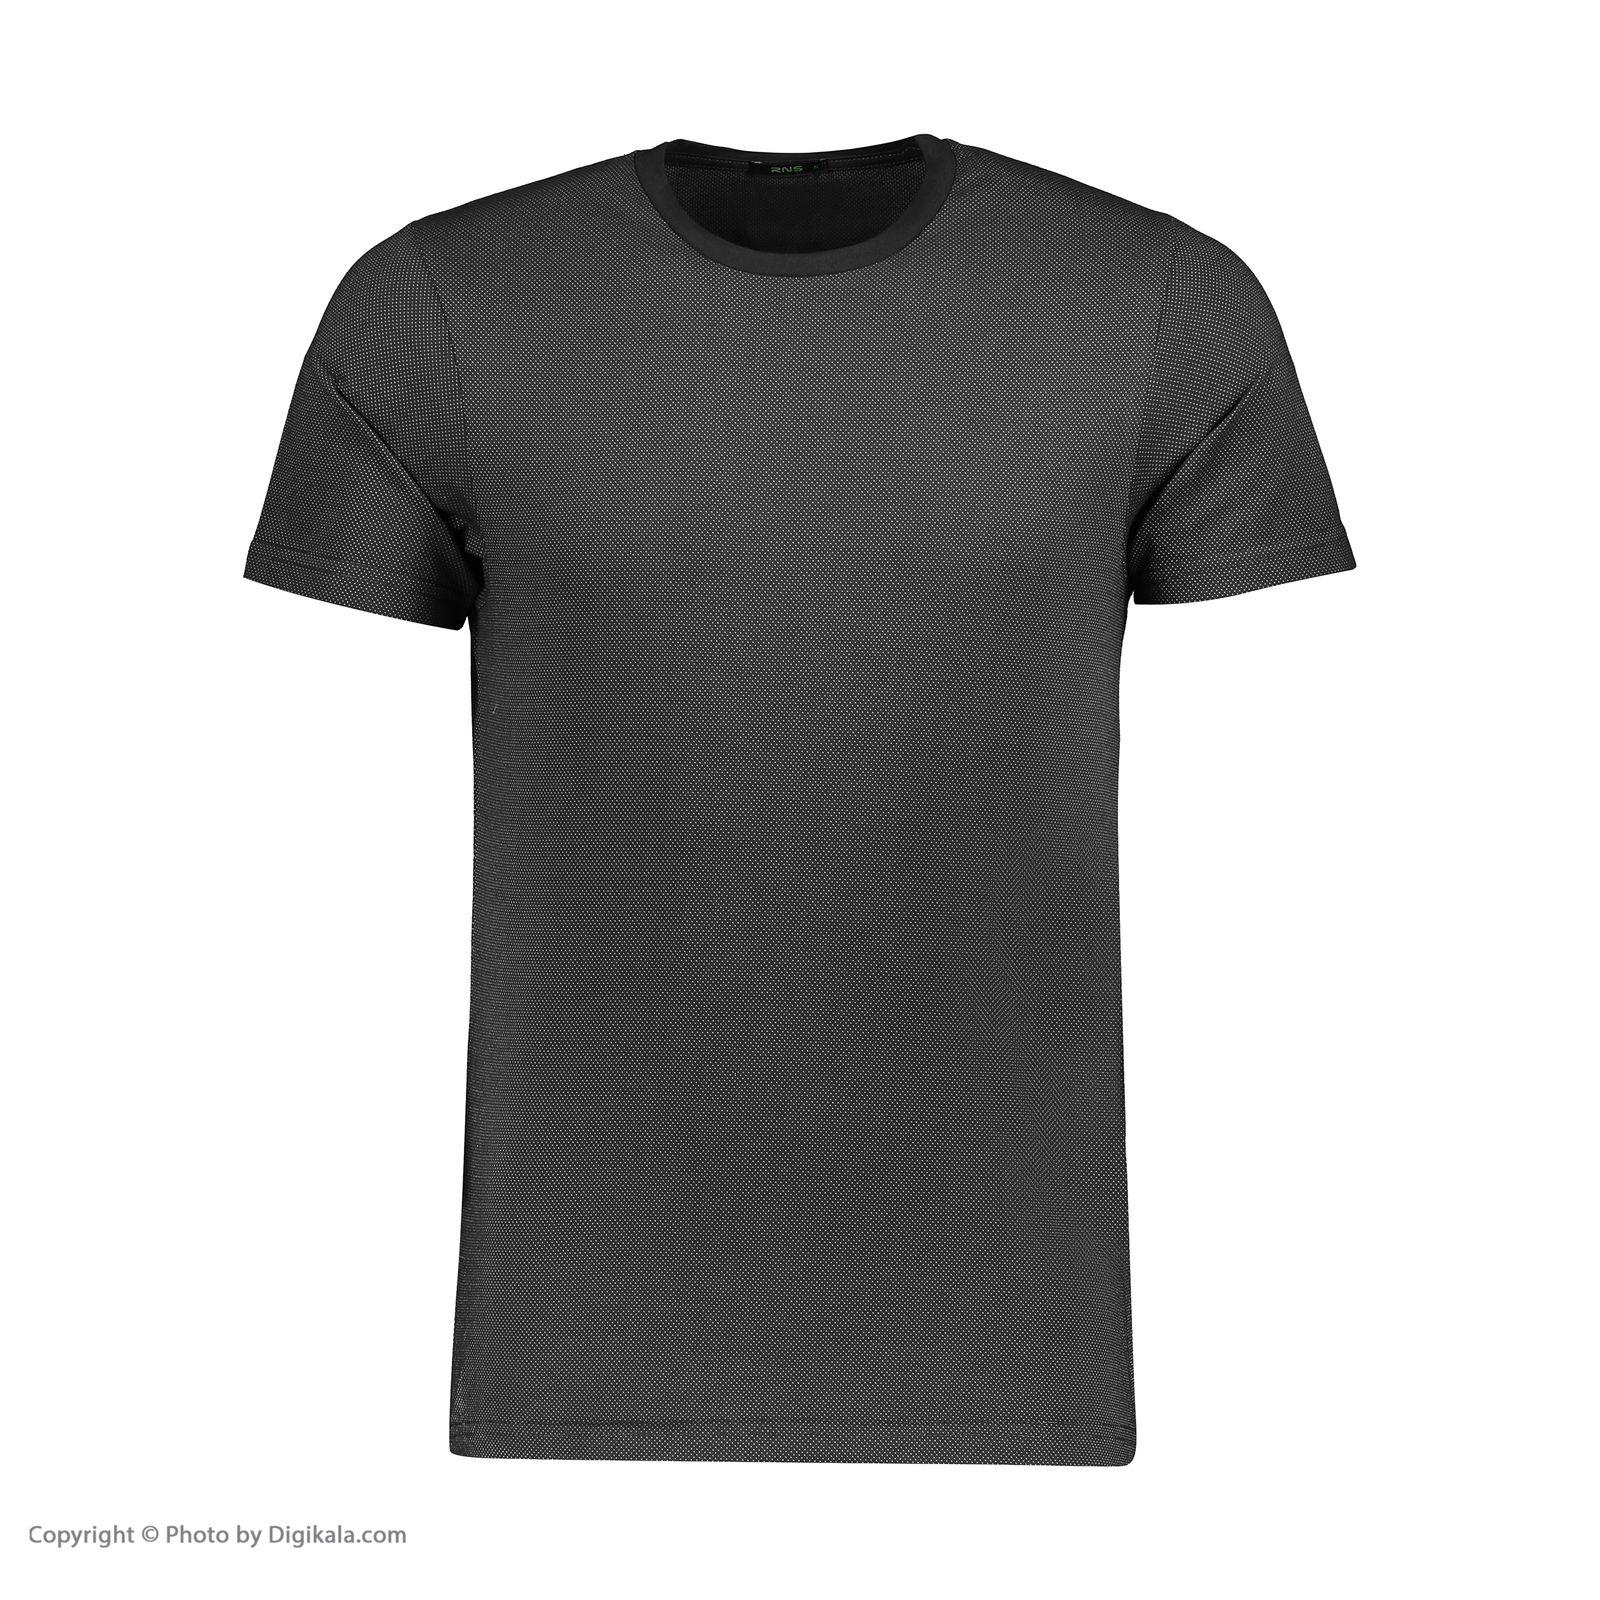 تی شرت مردانه آر ان اس مدل 1131143-99 -  - 2